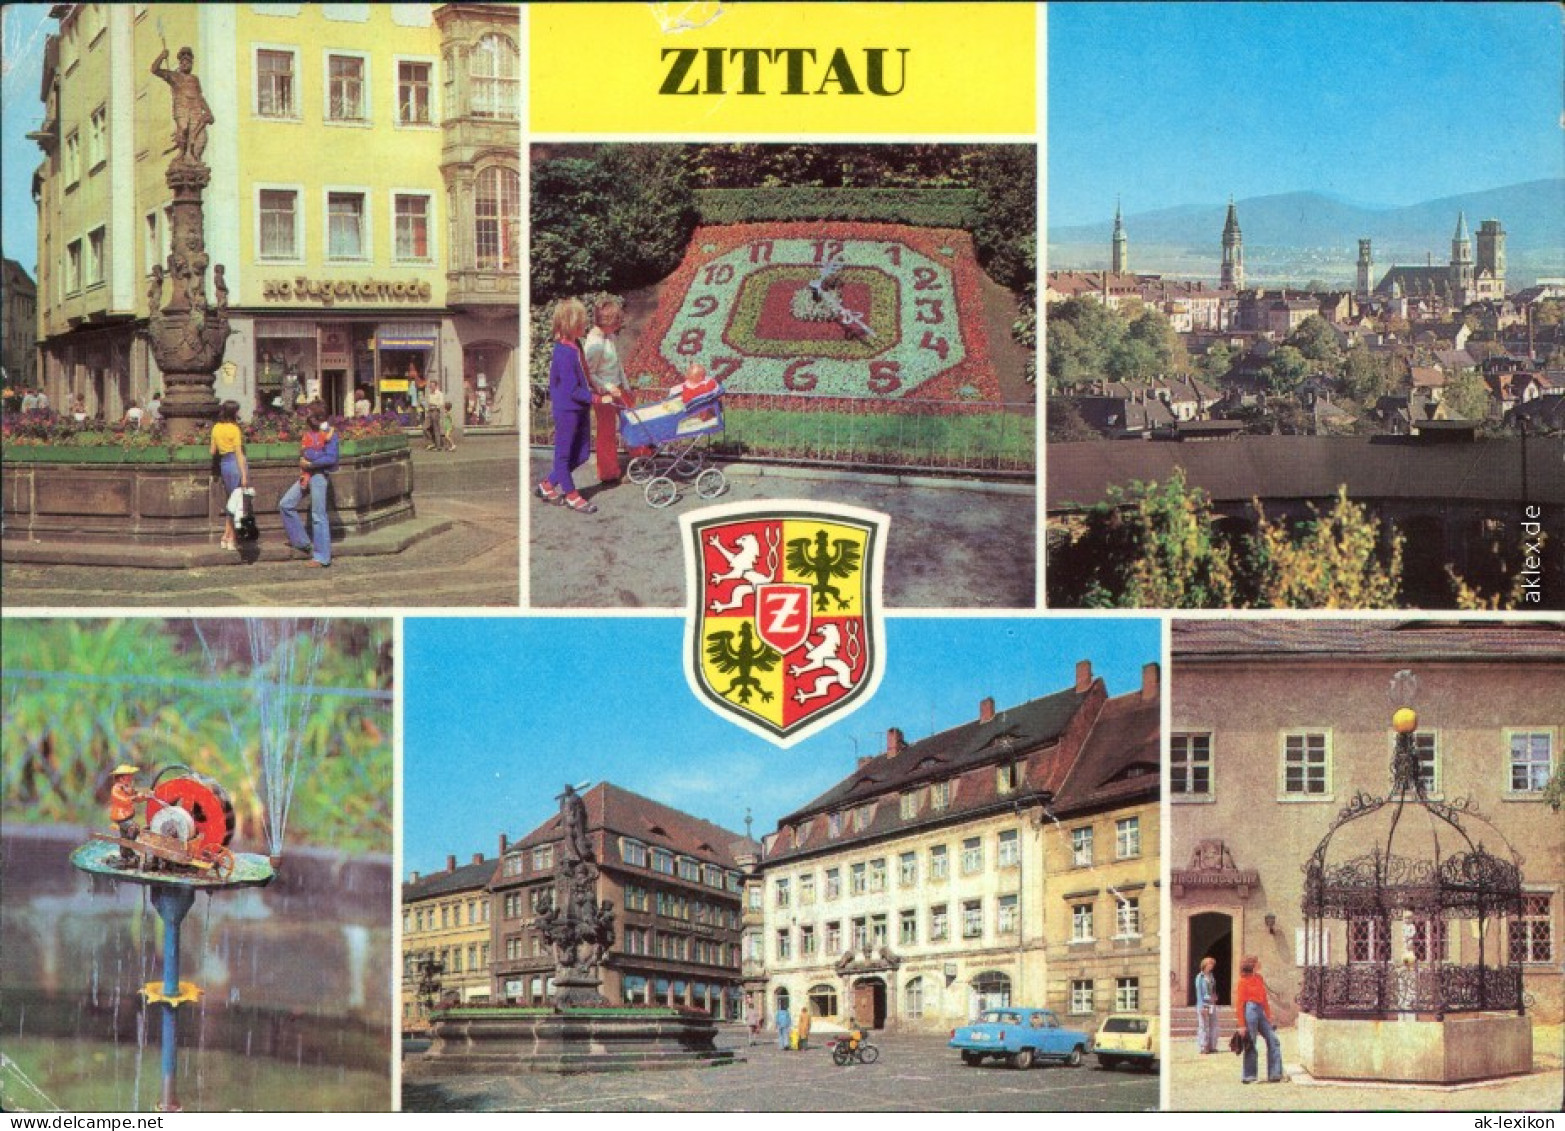 Zittau Rolandbrunnen,   Schleifermännchen, August-Bebel-Platz  1981 - Zittau